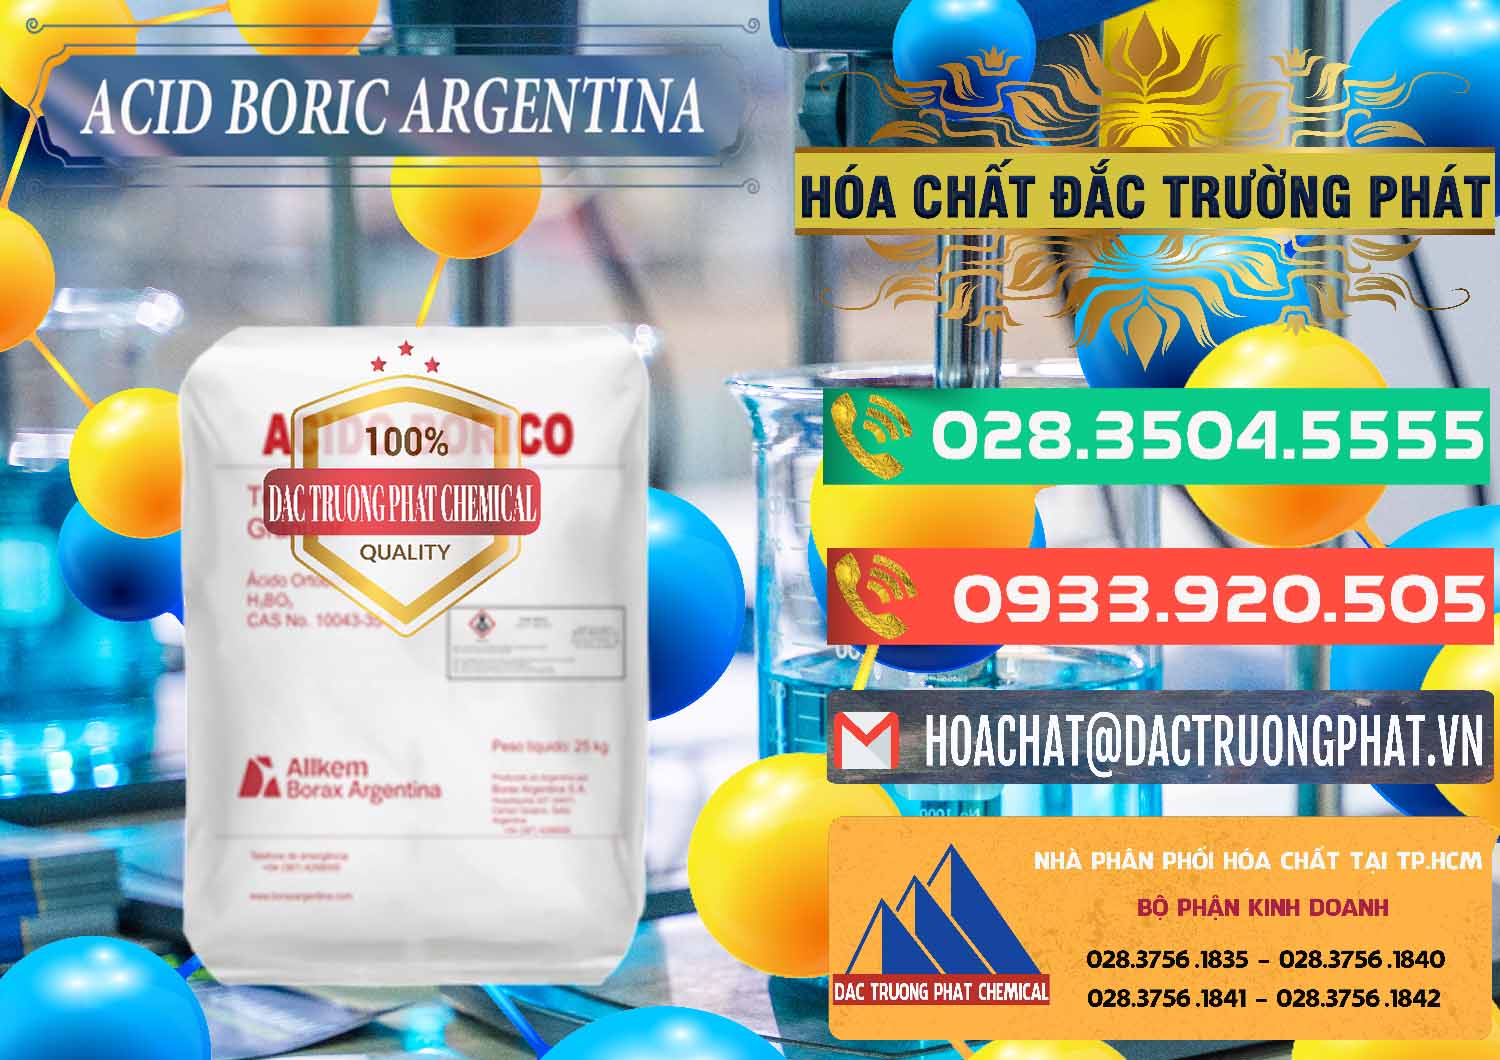 Cty chuyên kinh doanh & bán Acid Boric – Axit Boric H3BO3 99% Allkem Argentina - 0448 - Nhà cung cấp và bán hóa chất tại TP.HCM - congtyhoachat.com.vn